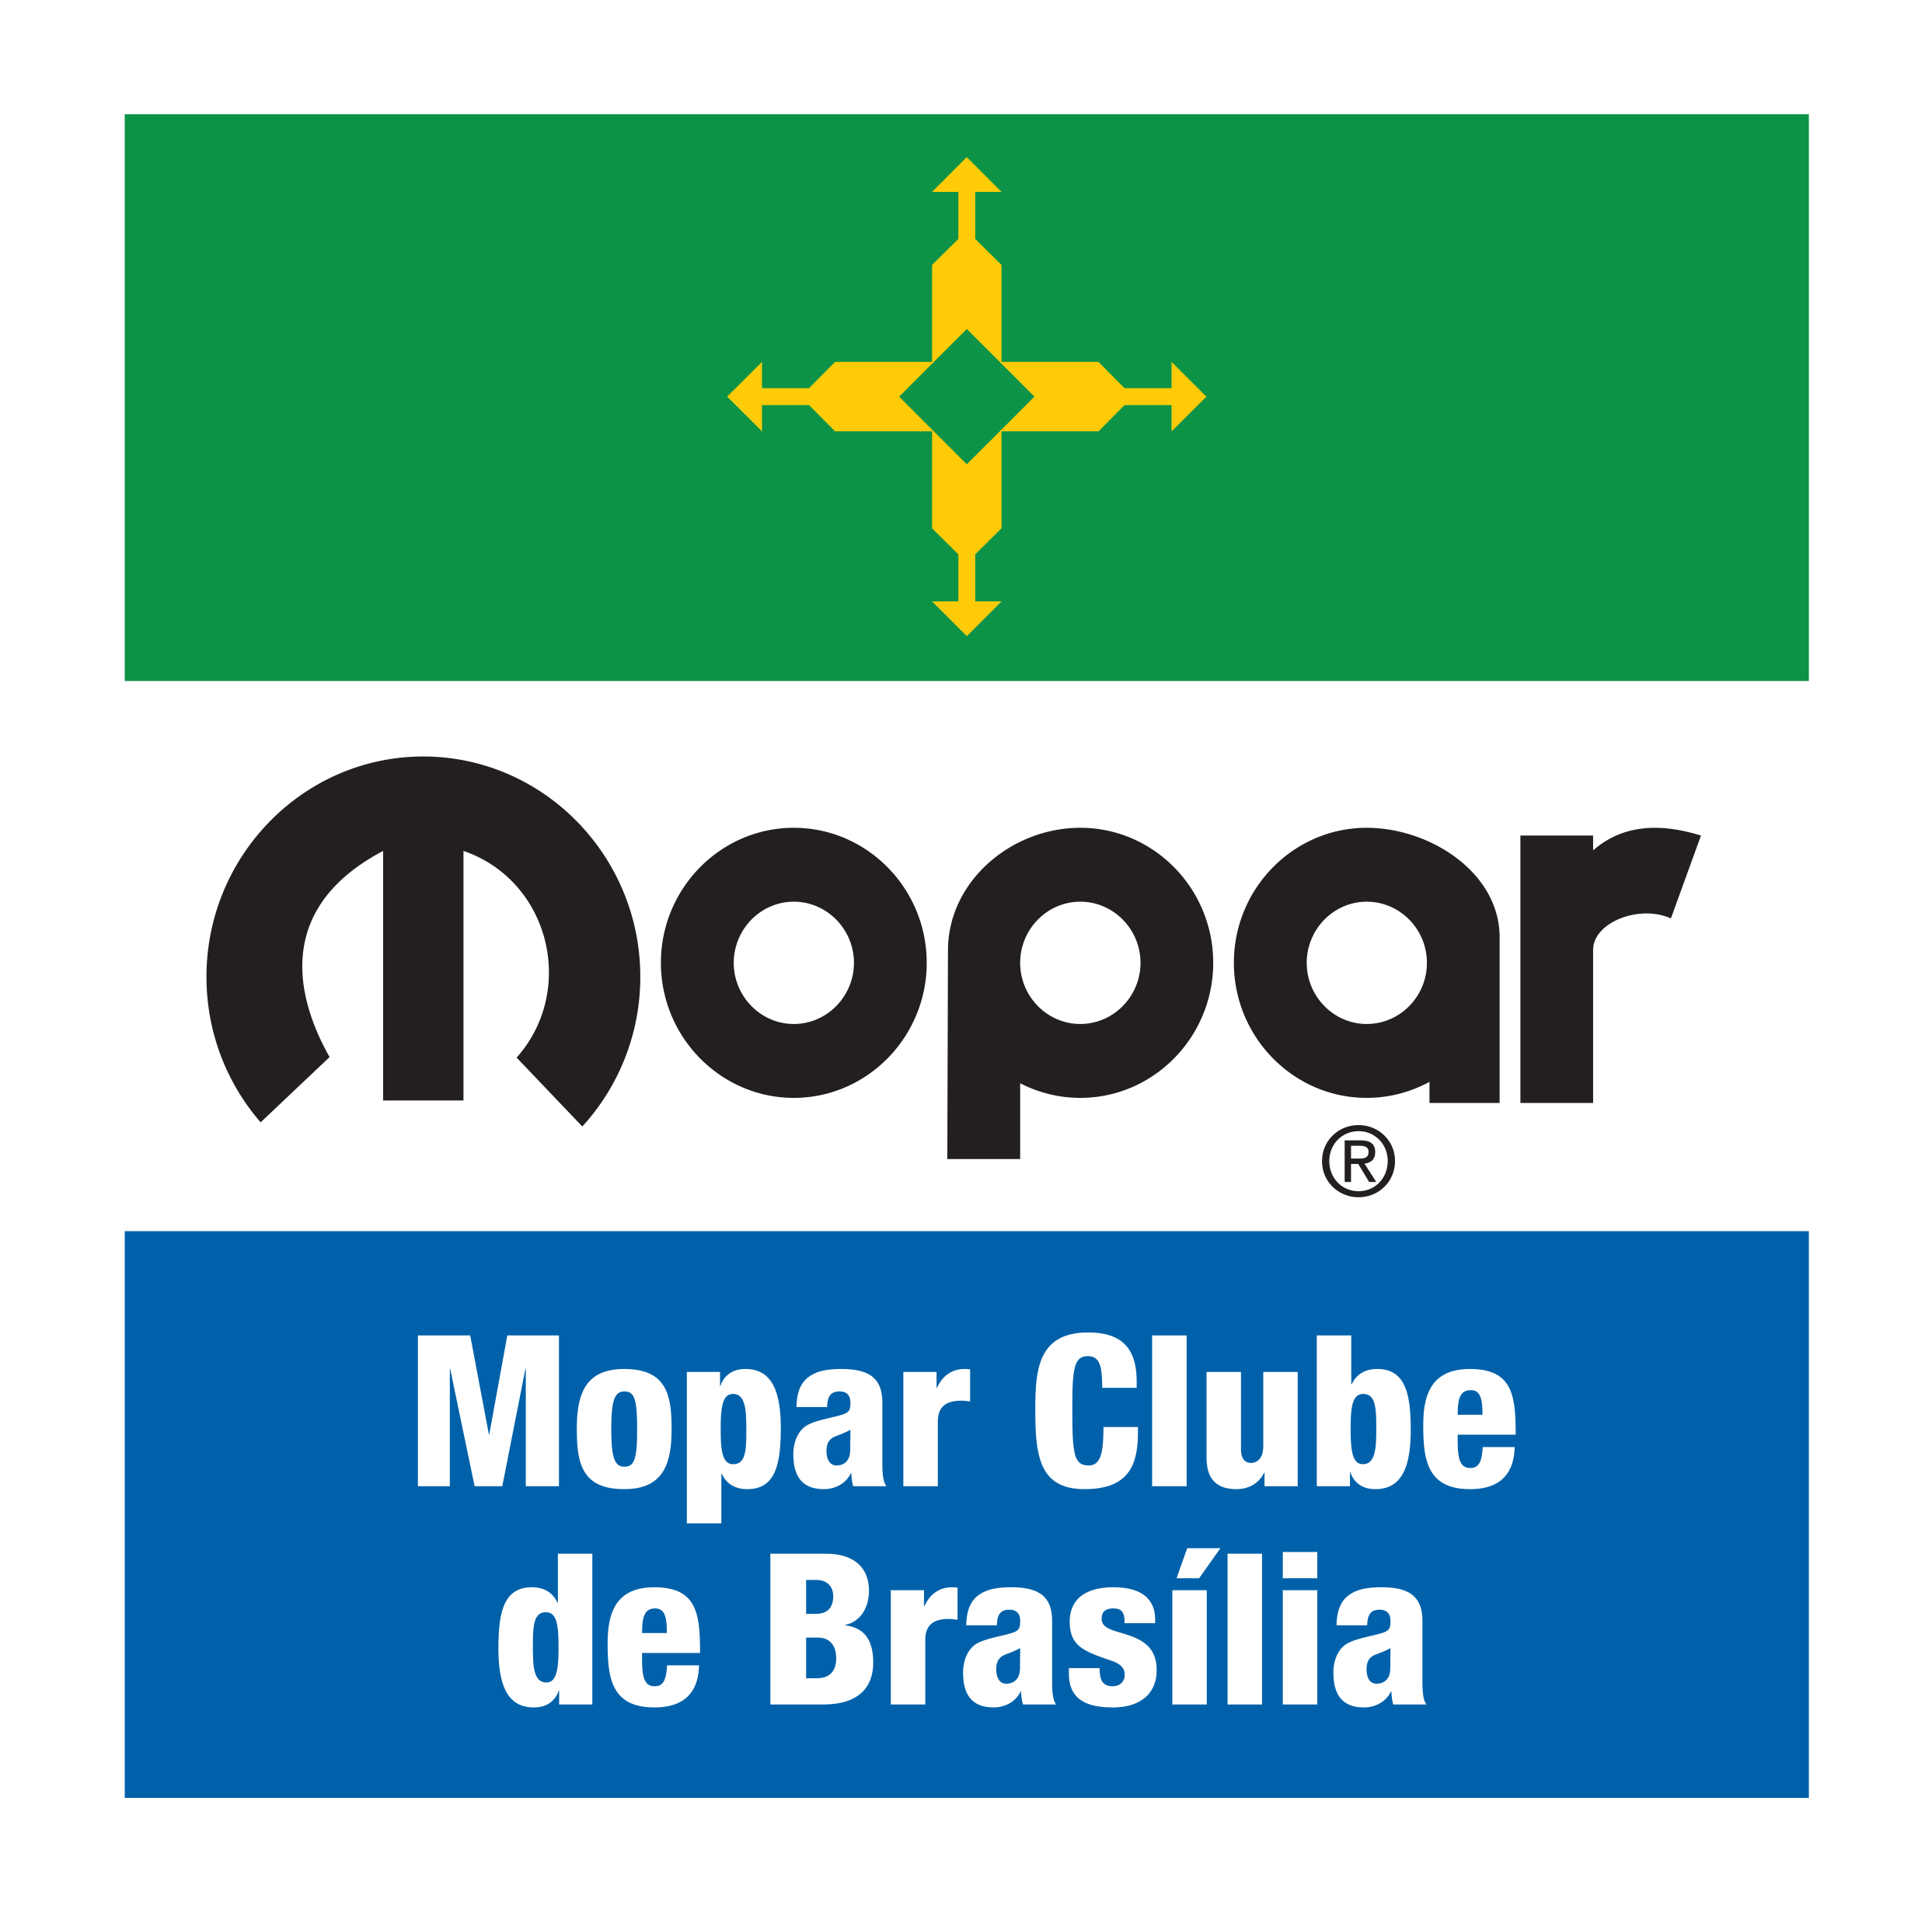 Mopar Clube de Brasília